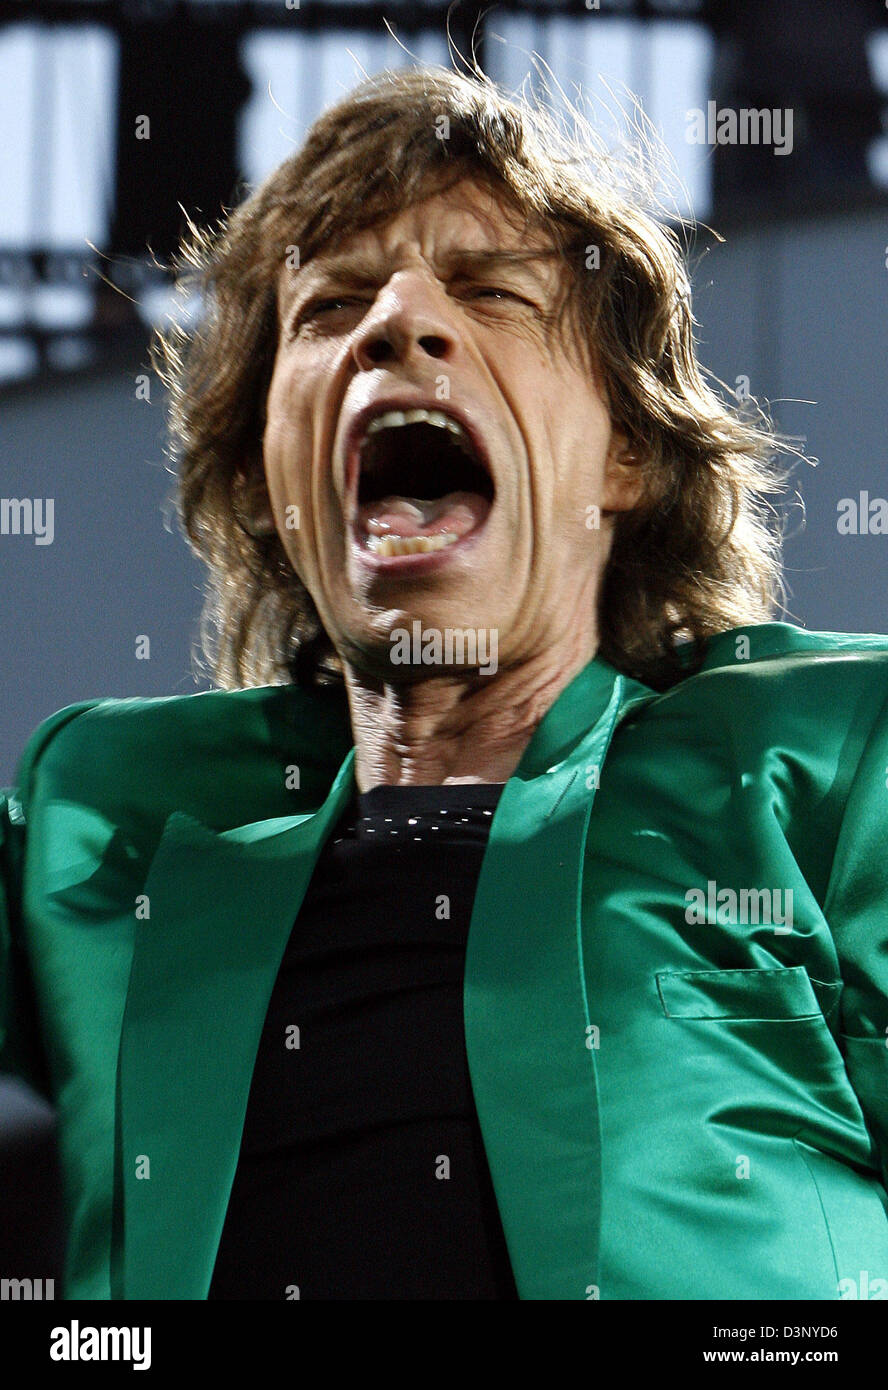 Mick Jagger des Rolling Stones chante à un concert dans le stade olympique de Munich, en Allemagne, dimanche, 16 juillet 2006. La gestion des Rolling Stones exclue les modalités contractuelles pour la couverture photo de l'Allemagne tour lors des discussions avec l'agence de presse allemande (dpa). Plus les photographes auront à signer des contrats comme avant. dpa et d'autres organismes n'ont pas soumis de rapport sur Banque D'Images